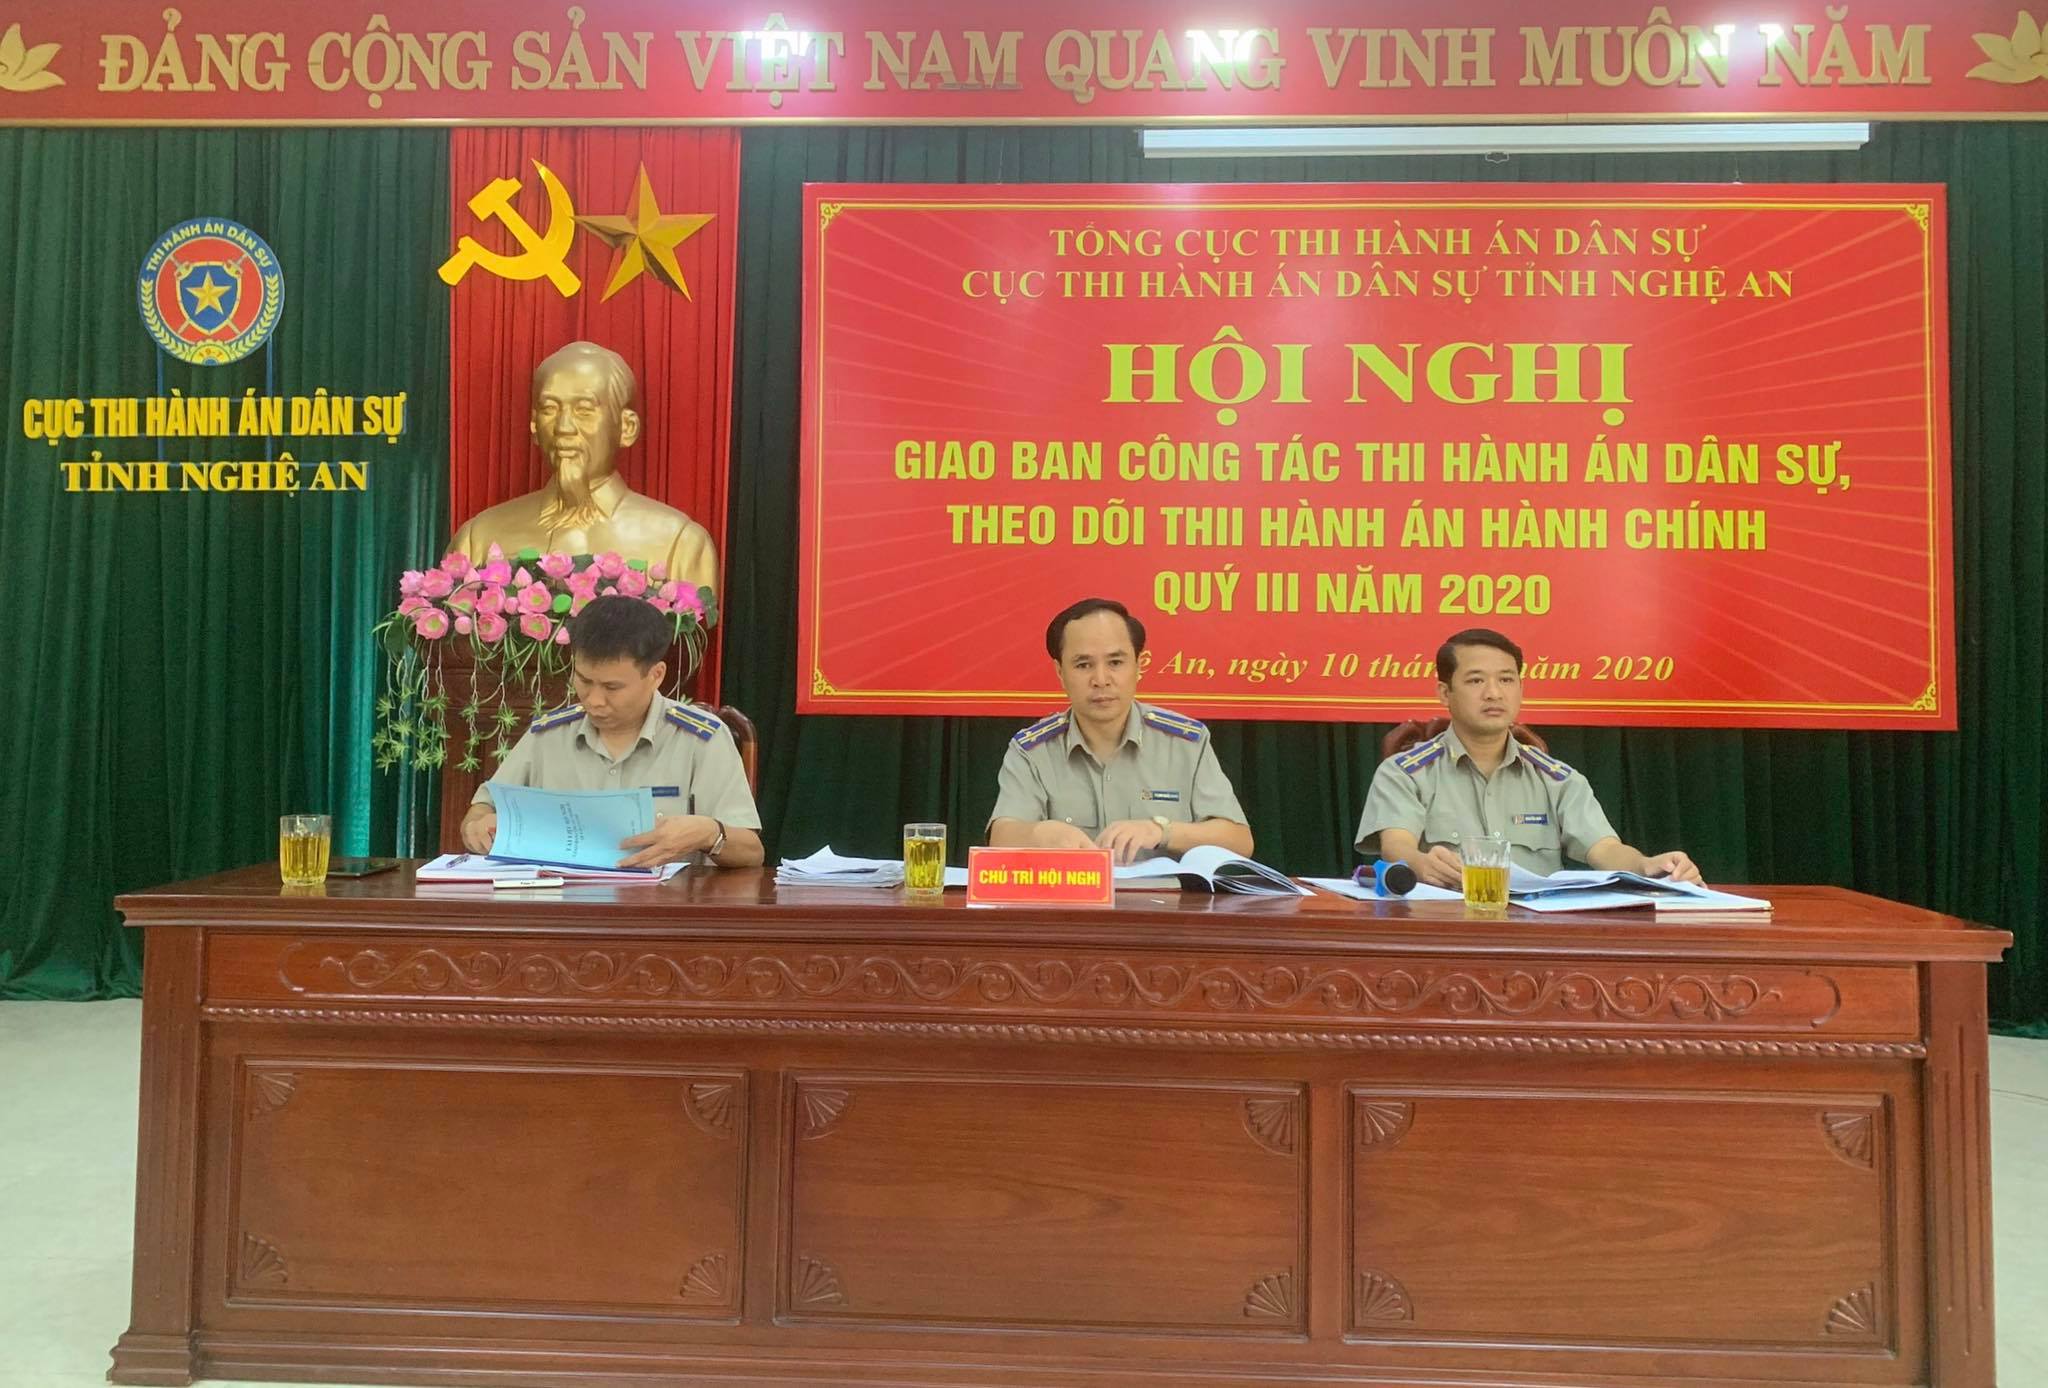 Cục Thi hành án dân sự tỉnh Nghệ An tổ chức Hội nghị giao ban công tác THADS, theo dõi THAHC Quý III năm 2020